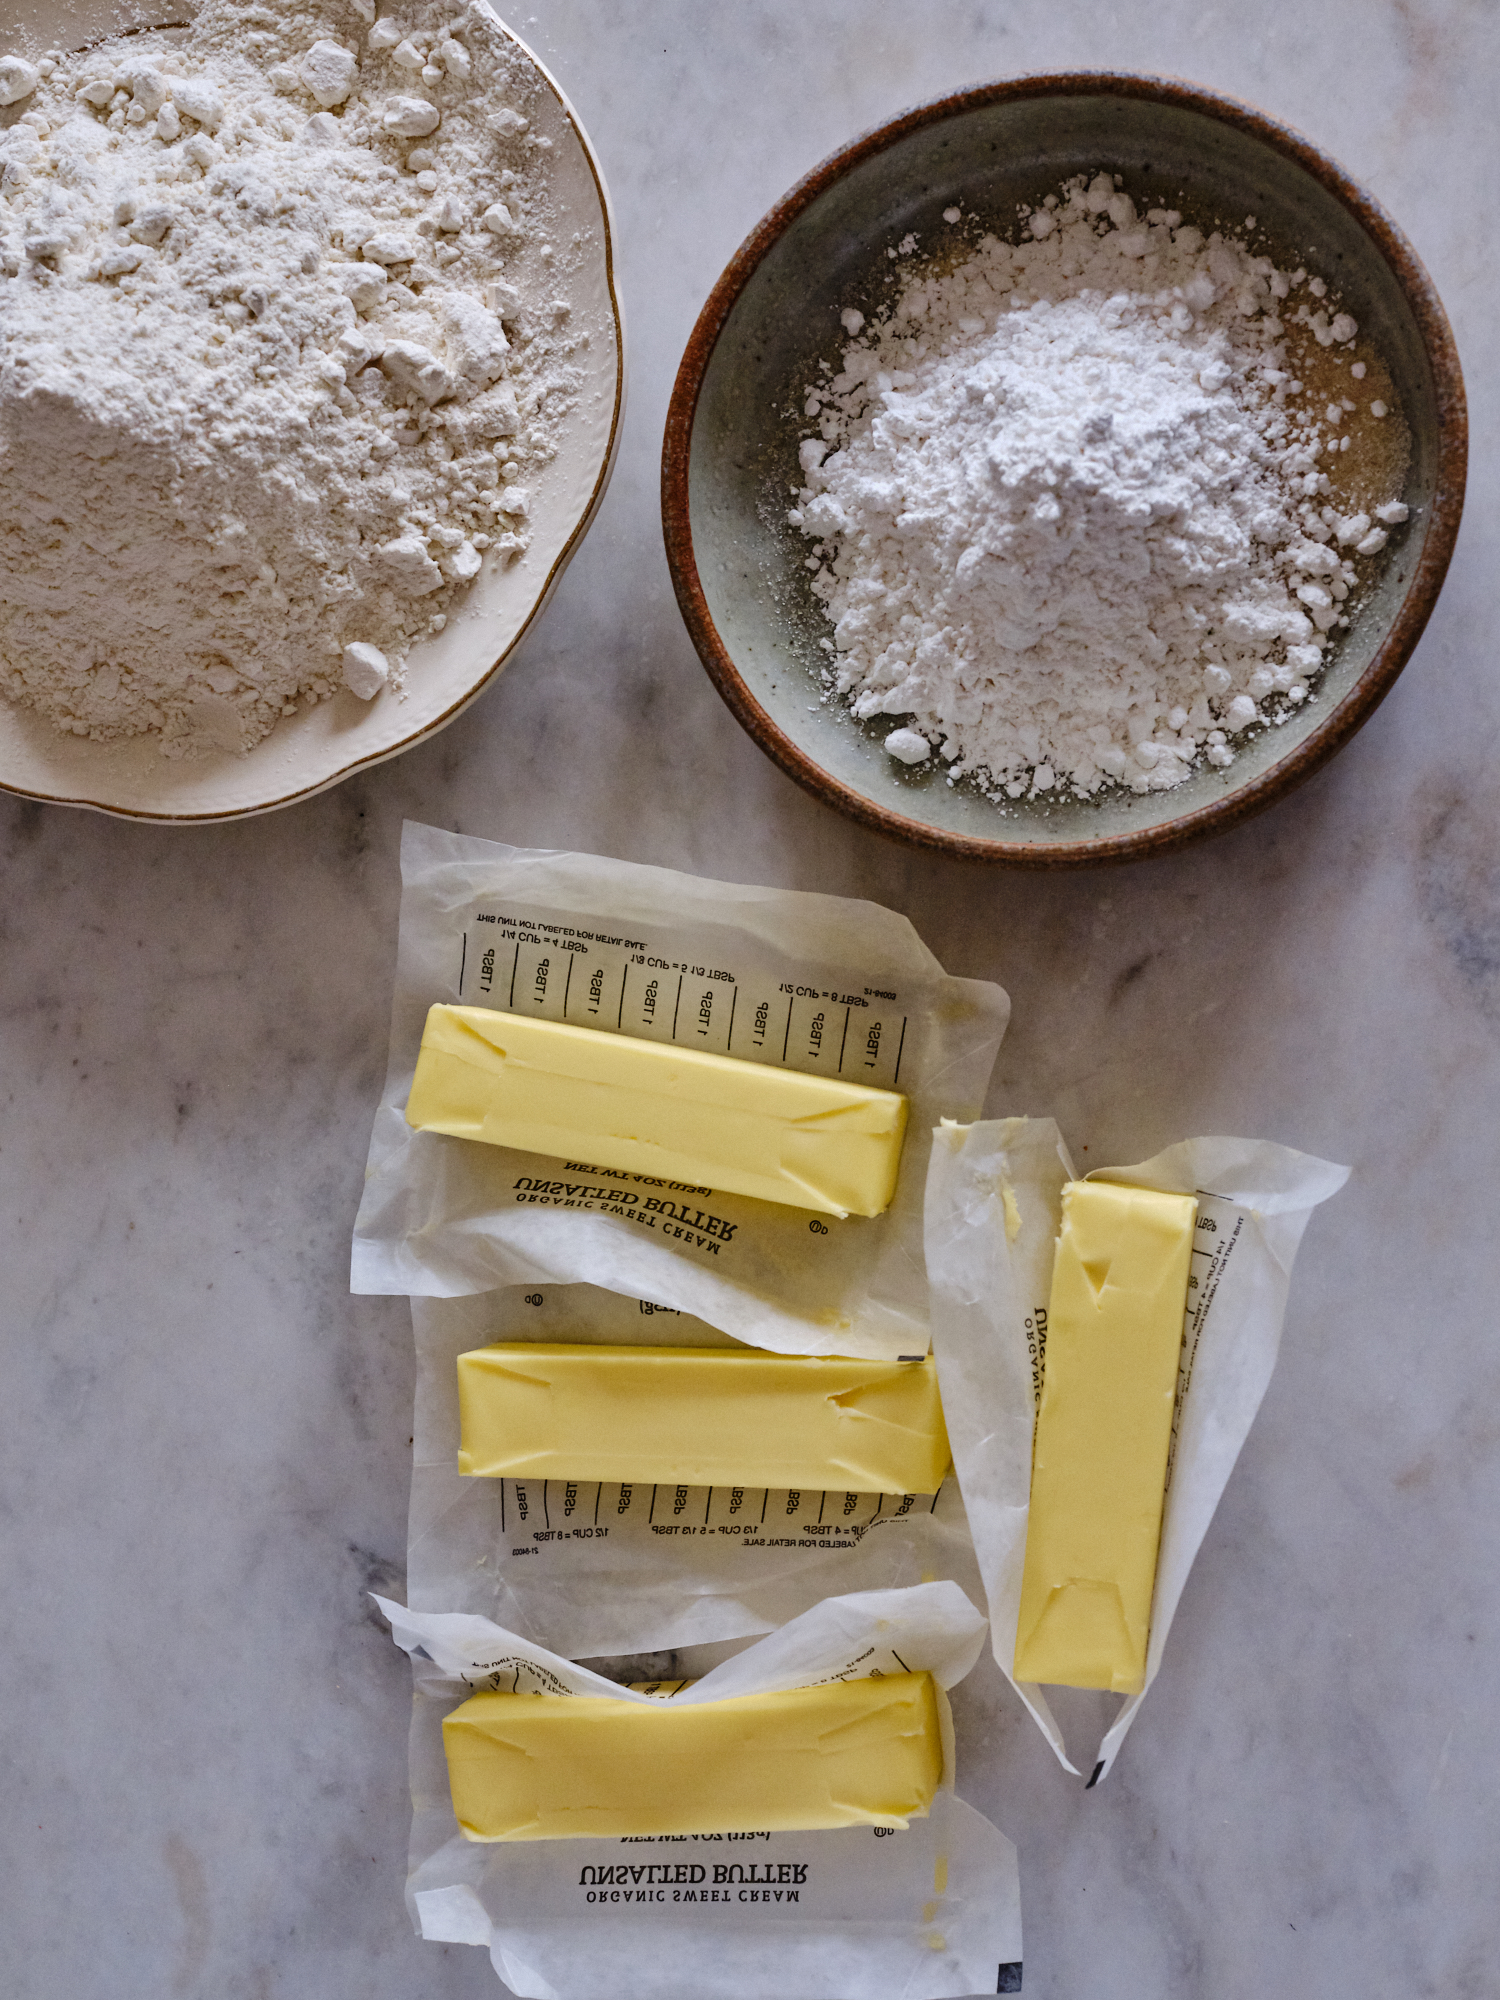 Ingredientes para fazer Shortbread - Farinha, Manteiga, Açúcar, Sal